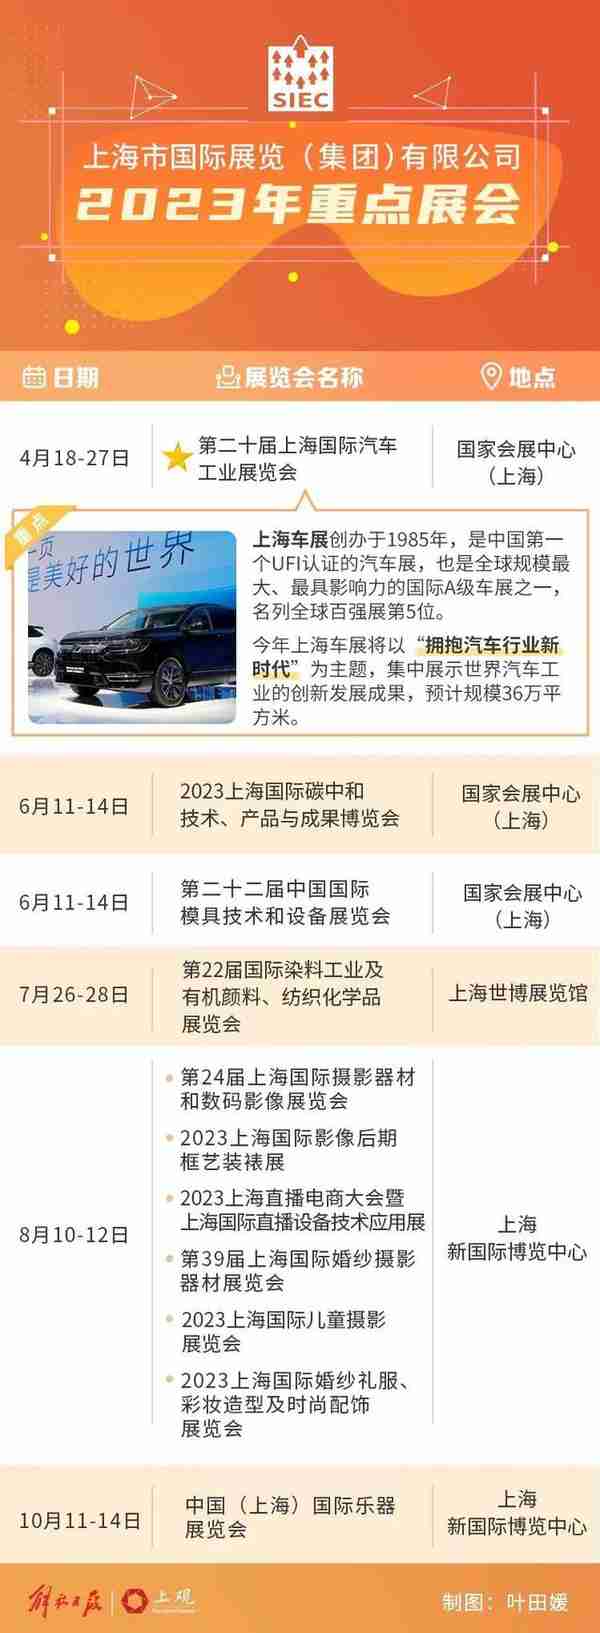 上海车展今年4月再度起航，预计规模36万平方米